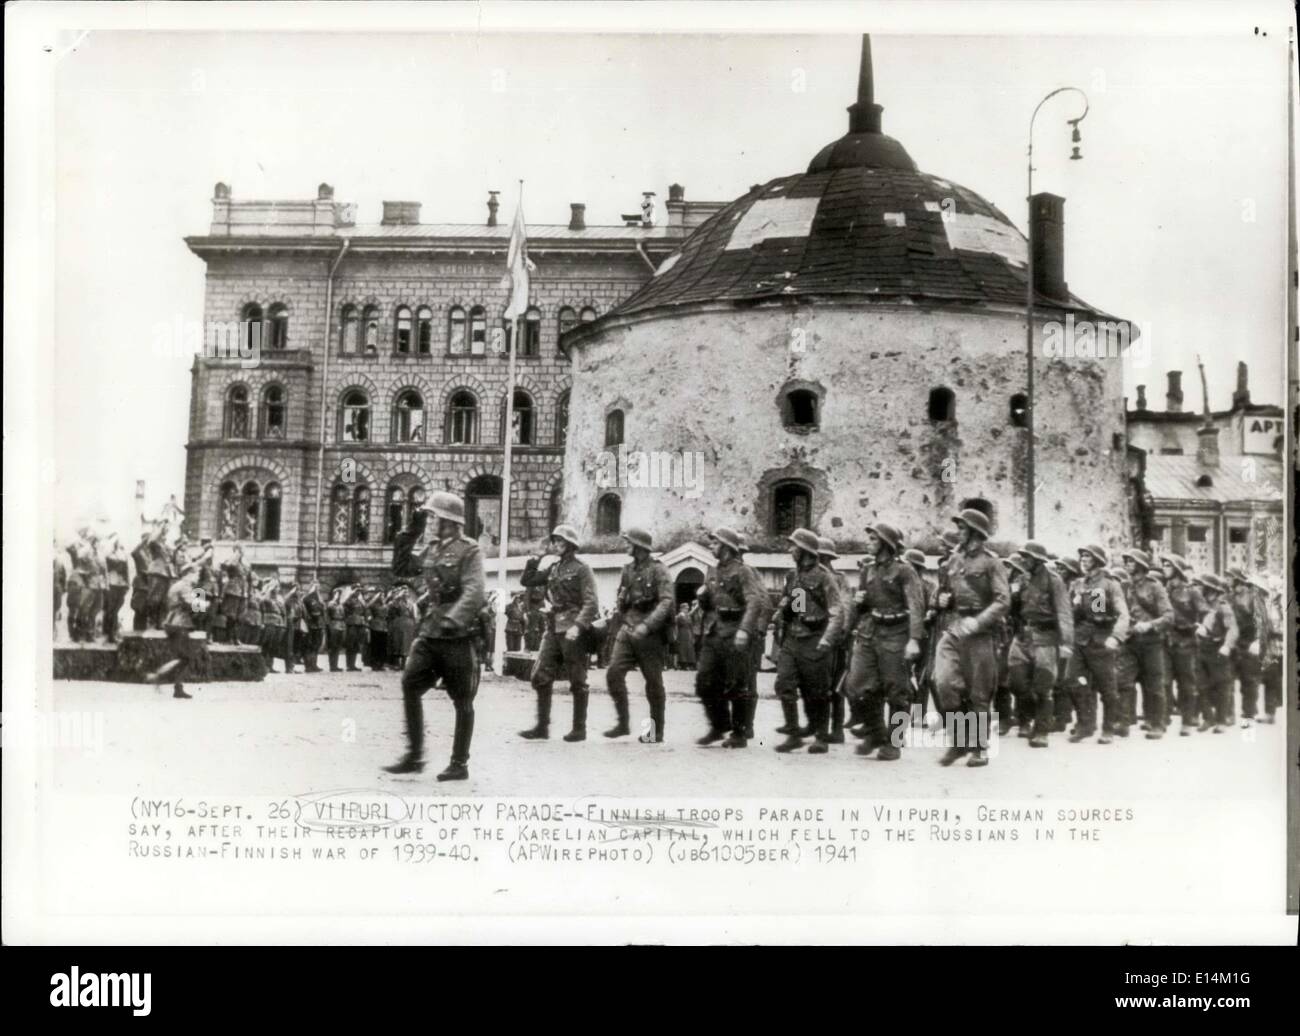 5. April 2012 - parade Wiburg Sieg Parade finnischen Truppen In Wiburg deutschen Quellen sagen, nach ihrer Rückeroberung der Karelain Hauptstadt, die für die Russen im finnischen Krieg von 1939-48 Russen fiel. Stockfoto